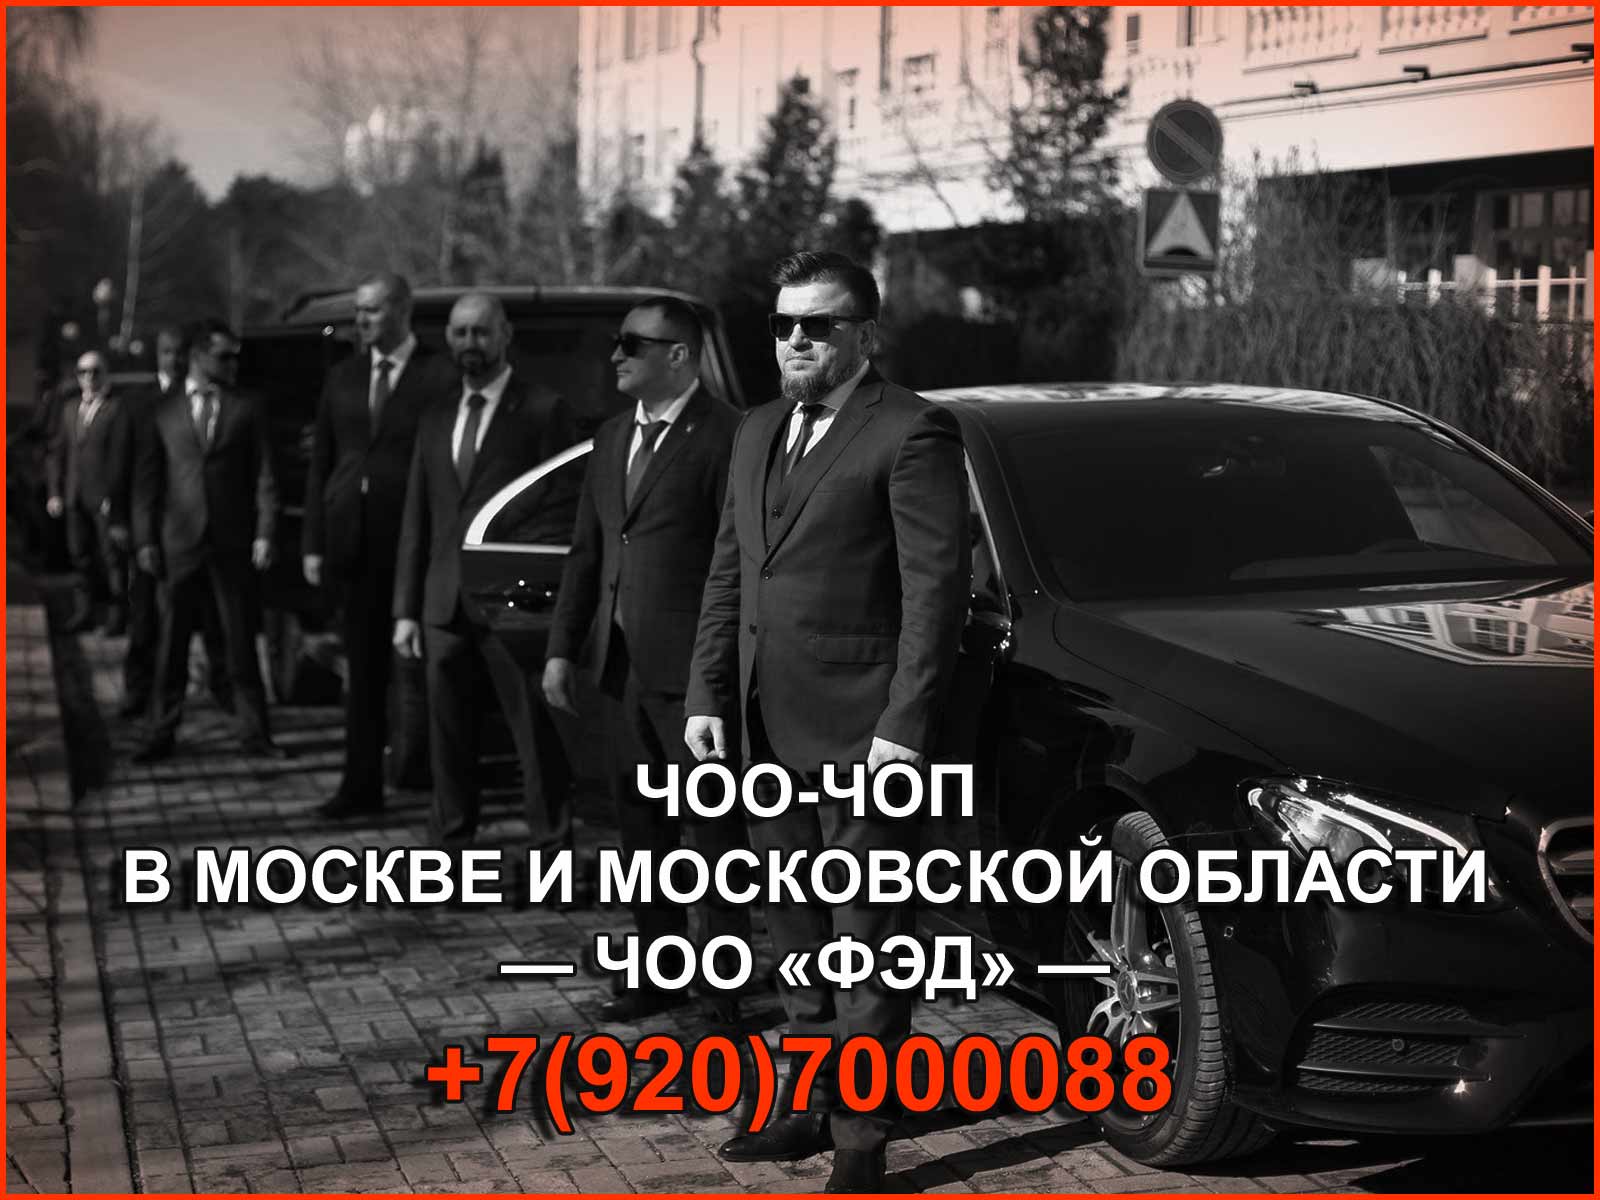 ЧОО "ФЭД" предоставляет надёжные охранные услуги в Москве и МО